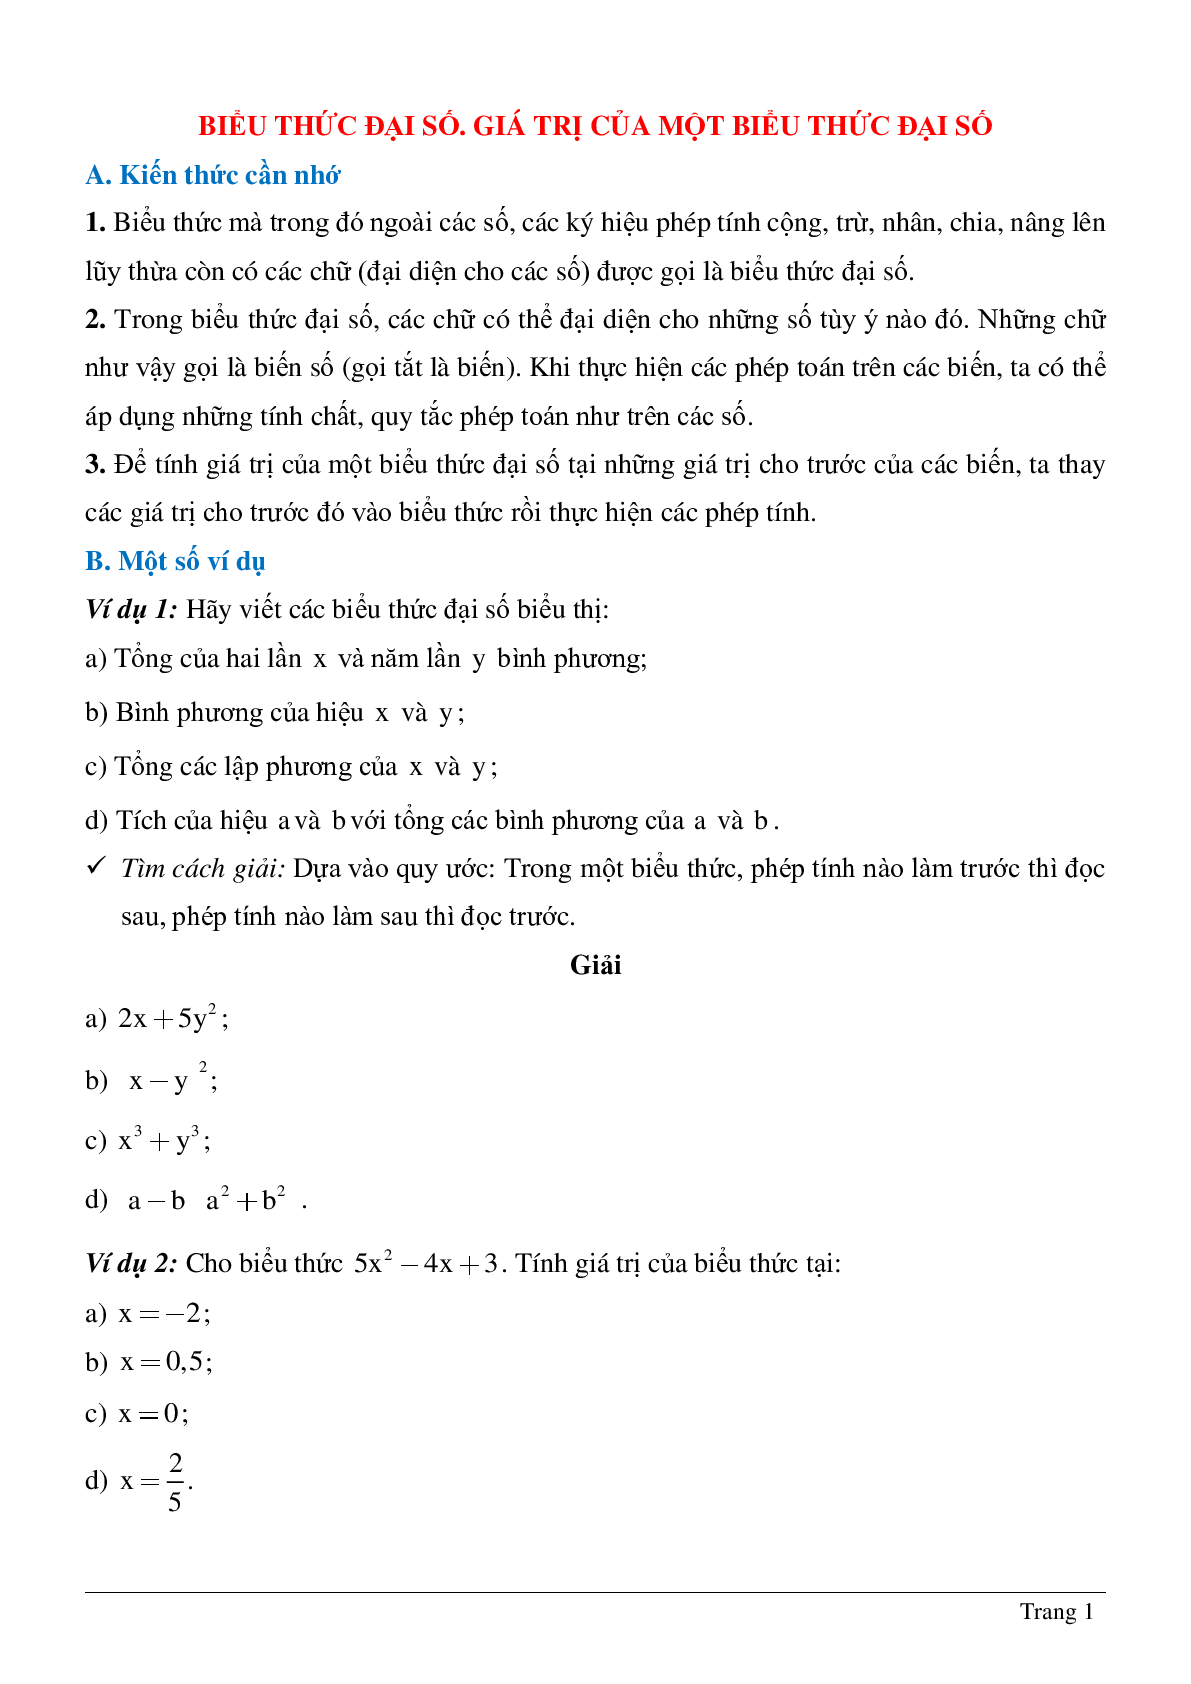 Phương pháp giải, bài tập về Biểu thức đại số - Giá trị của một biểu thức đại số chọn lọc (trang 1)